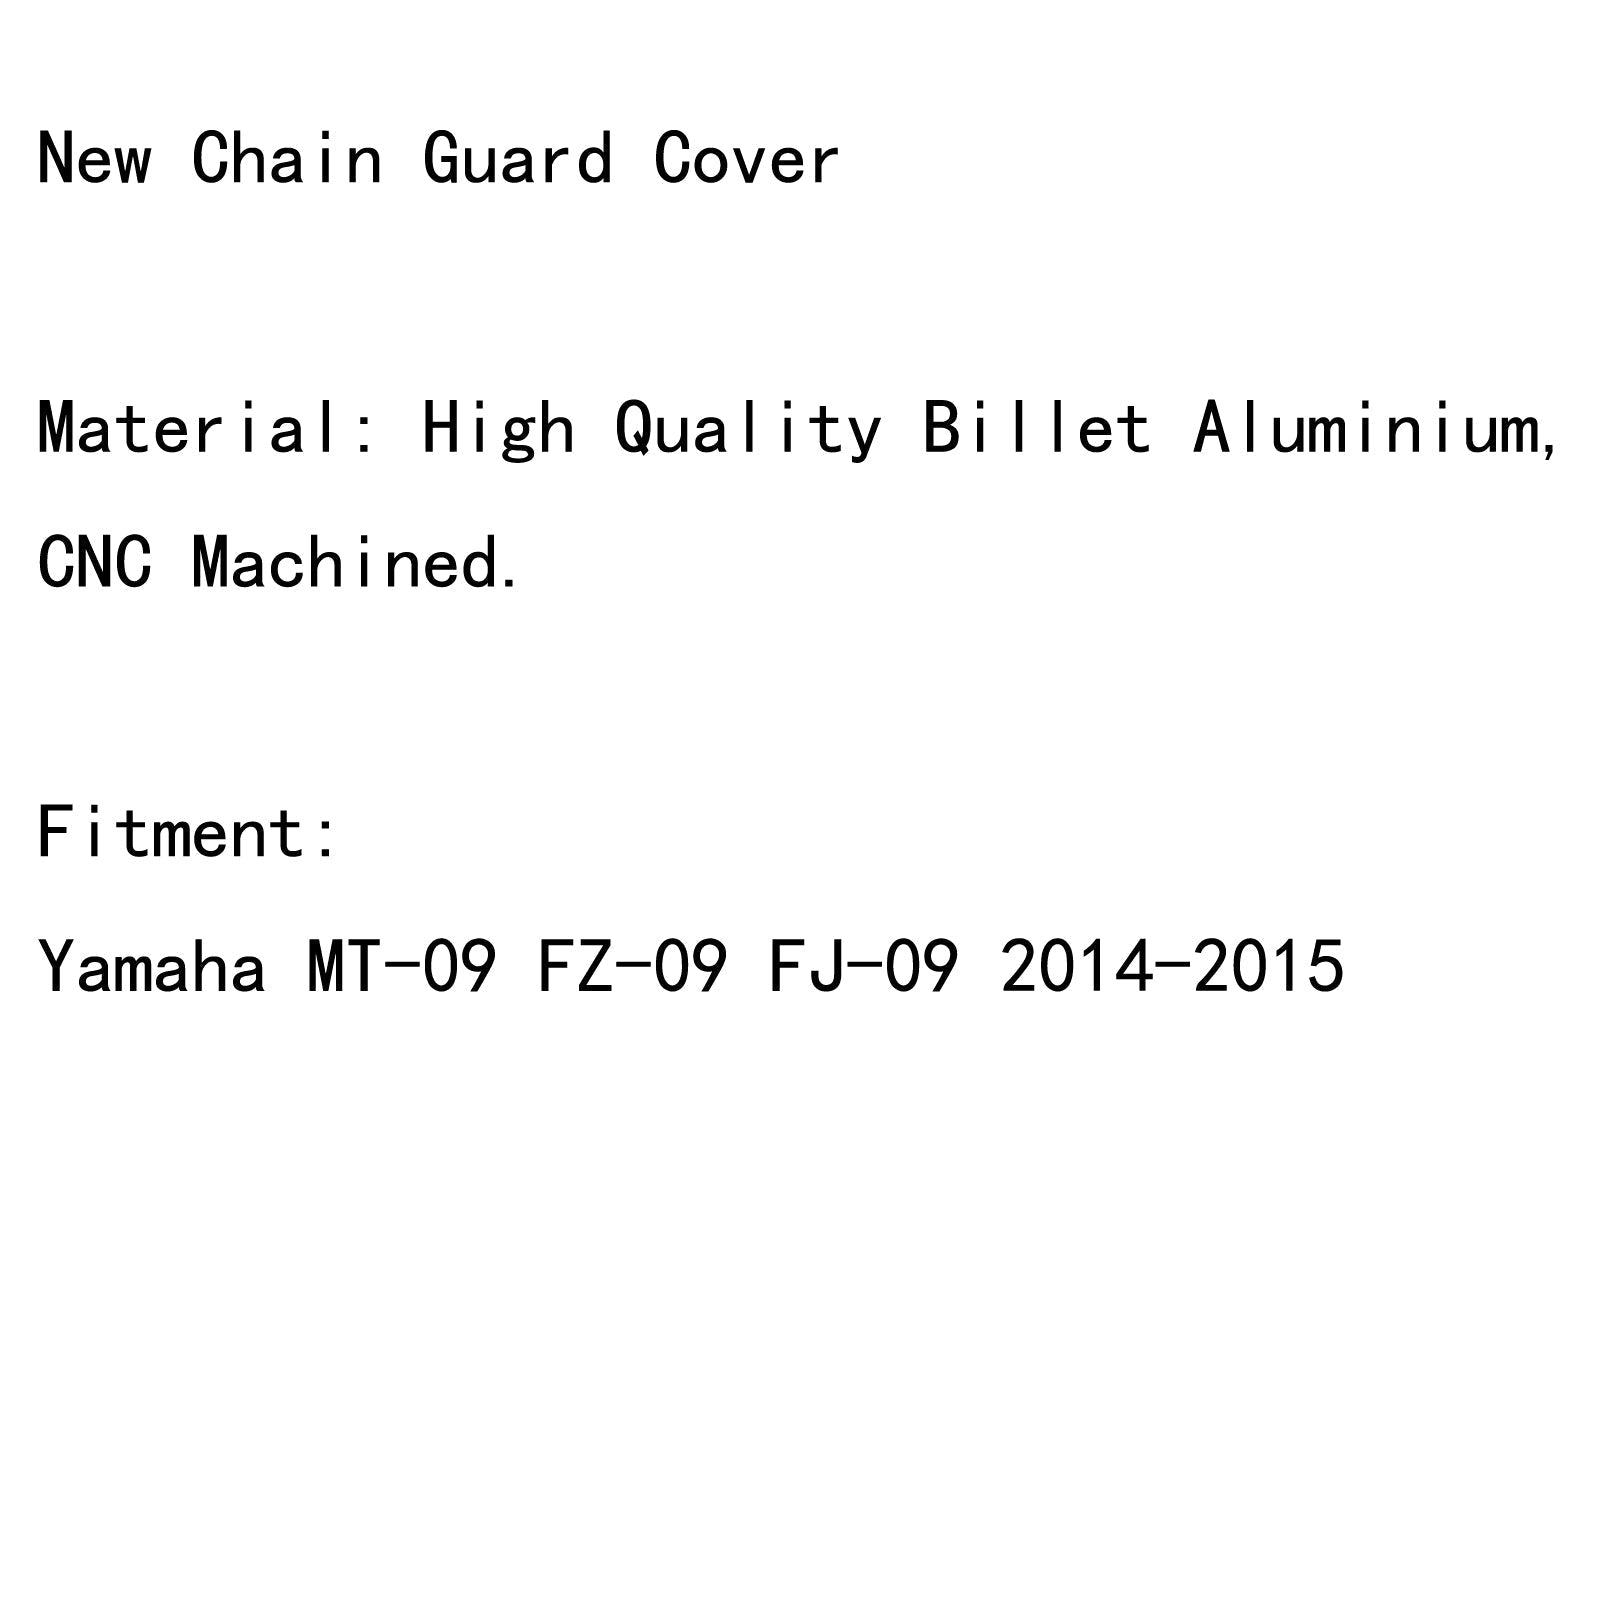 Protecteur de couvercle de garde-chaîne en aluminium pour Yamaha MT-09 FZ-09 FJ-09 2014-2015 générique